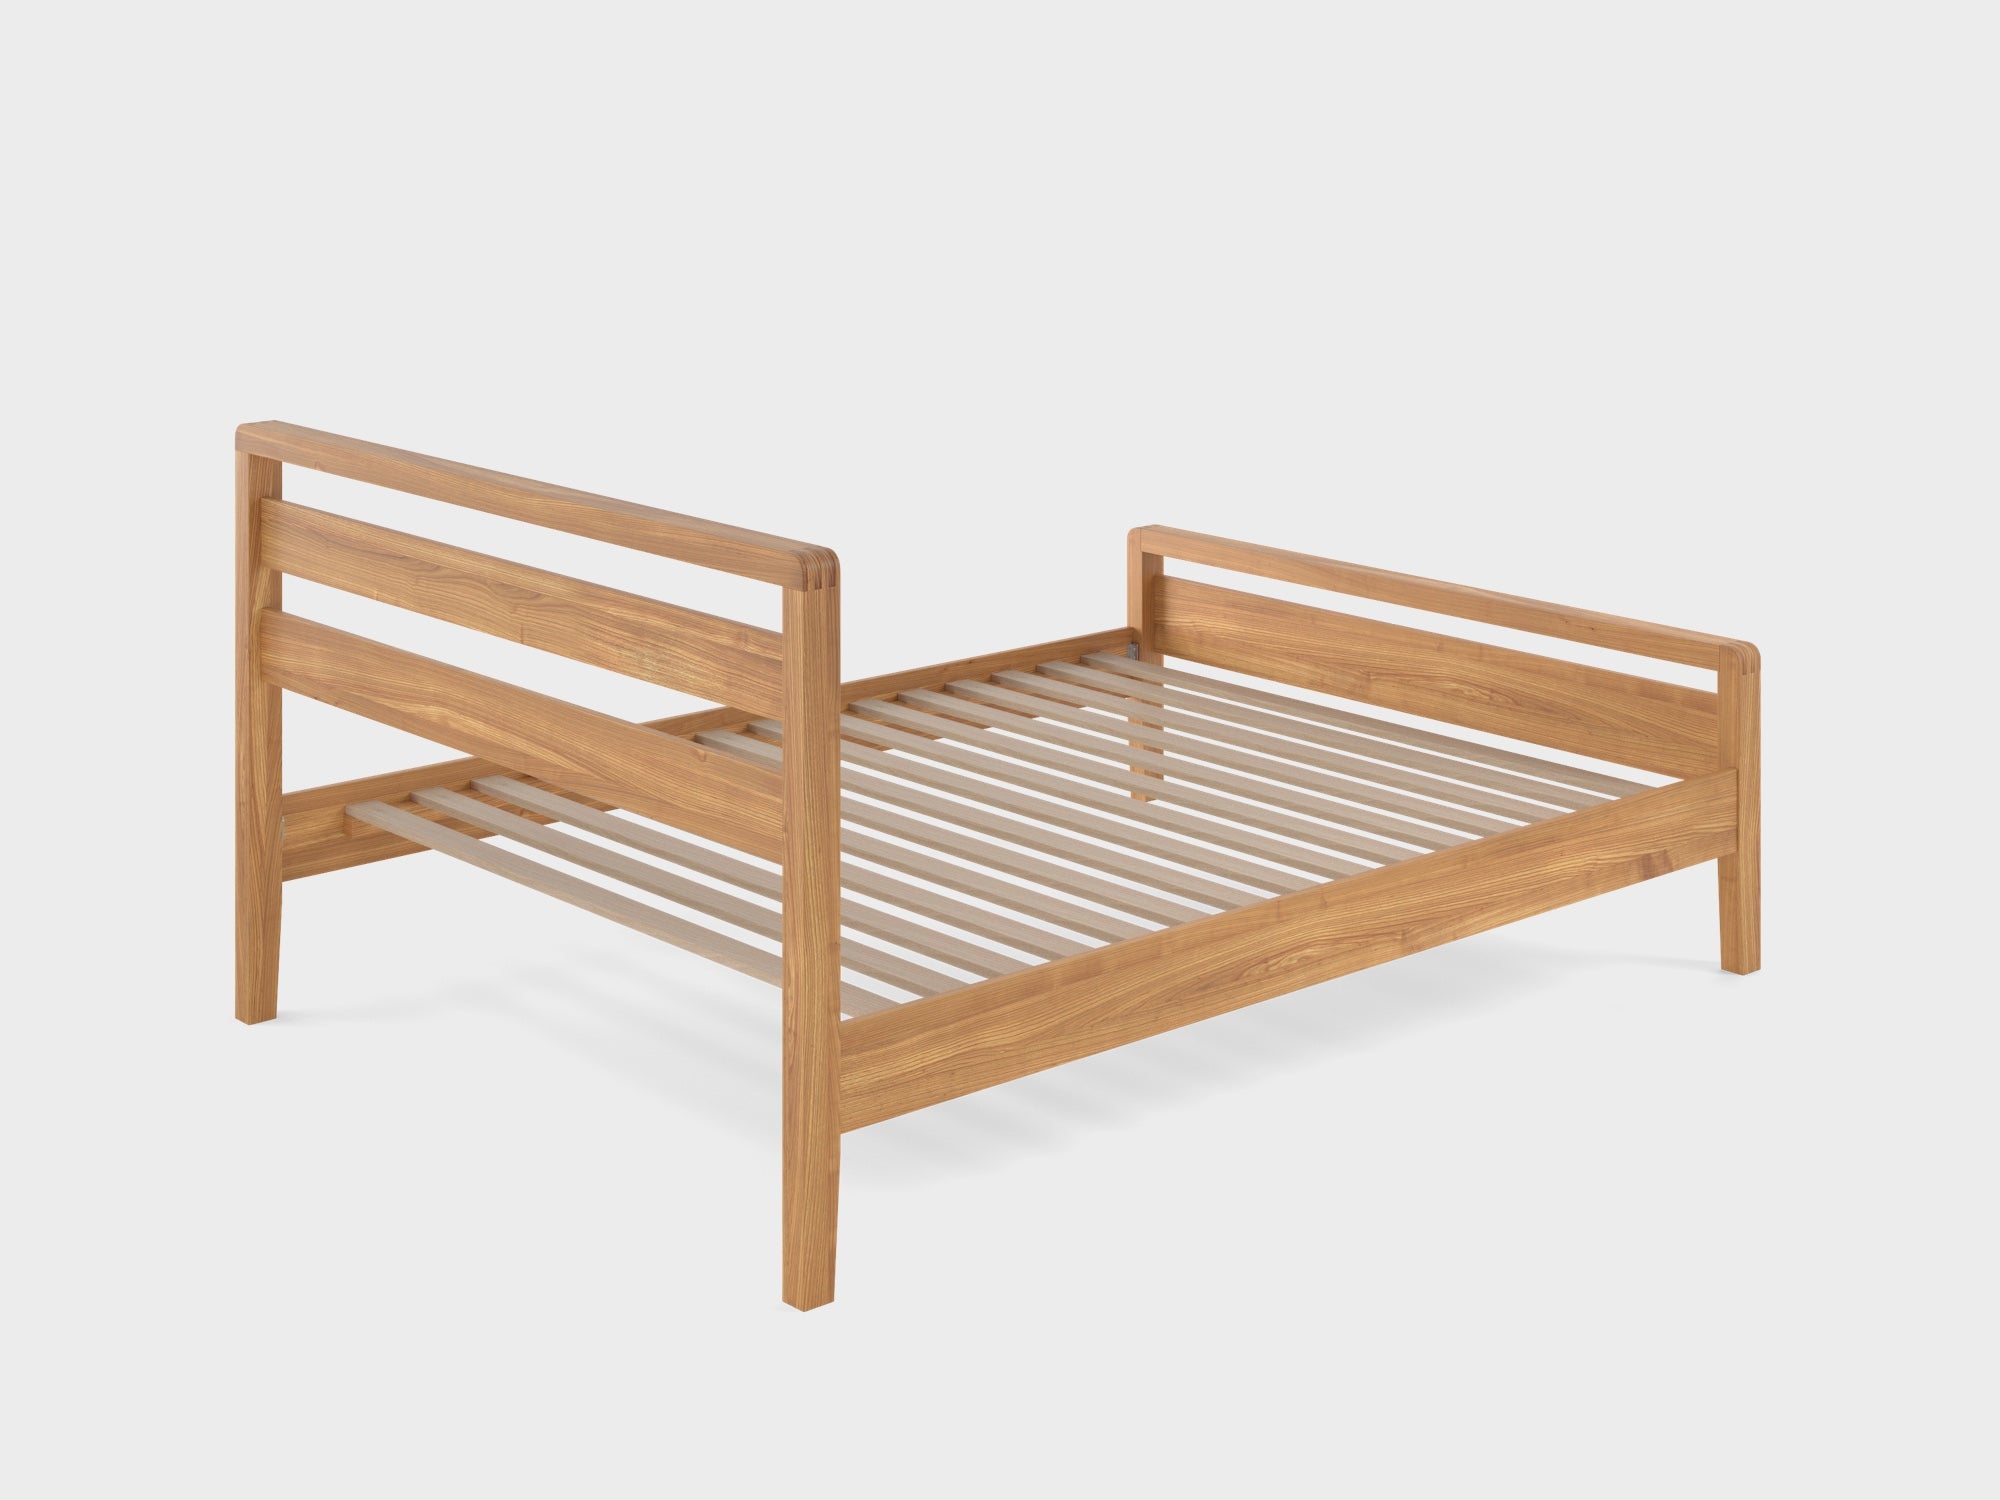 the hip hop bed frame